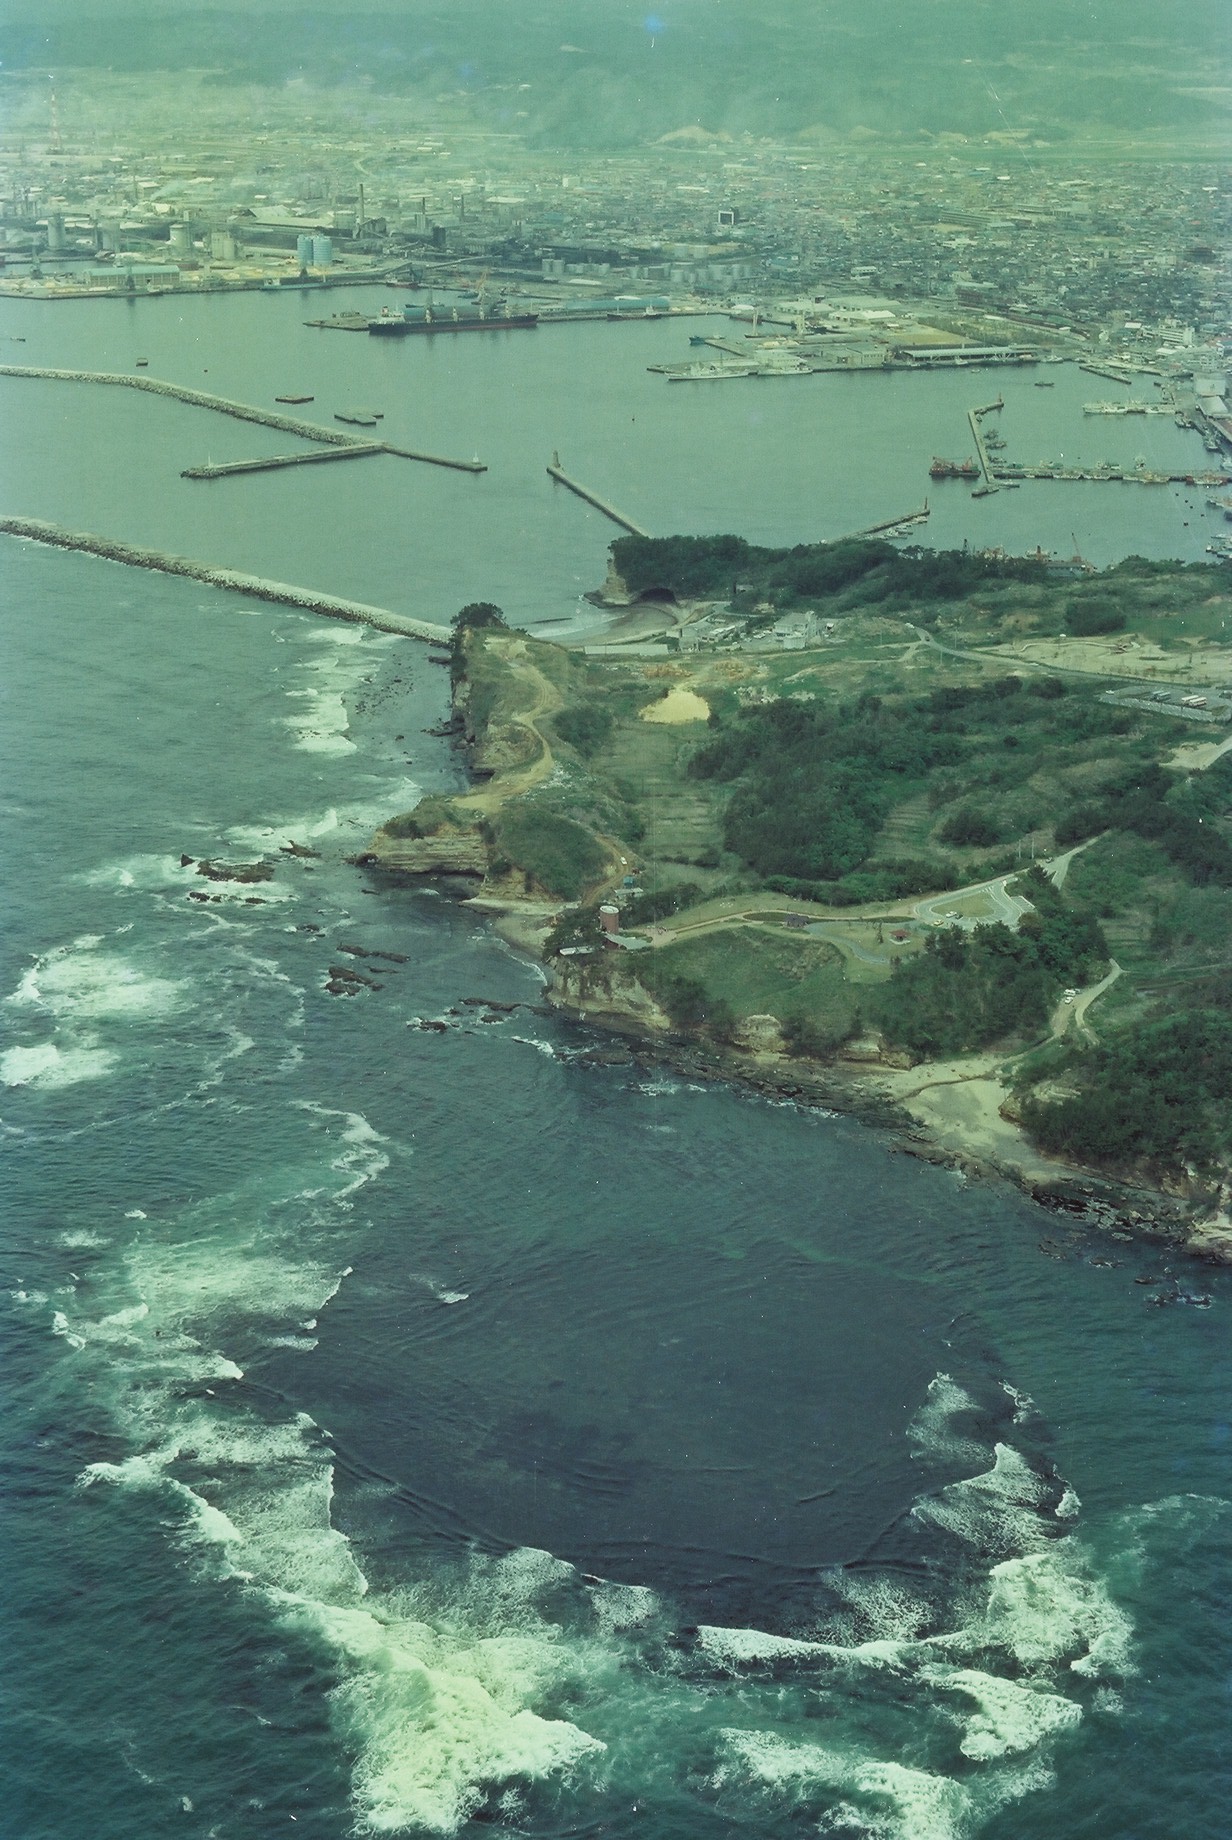 写真4　空撮・三崎海岸南方上空から三崎公園、小名浜港港湾を見る(昭和55年頃、いわき市撮影)